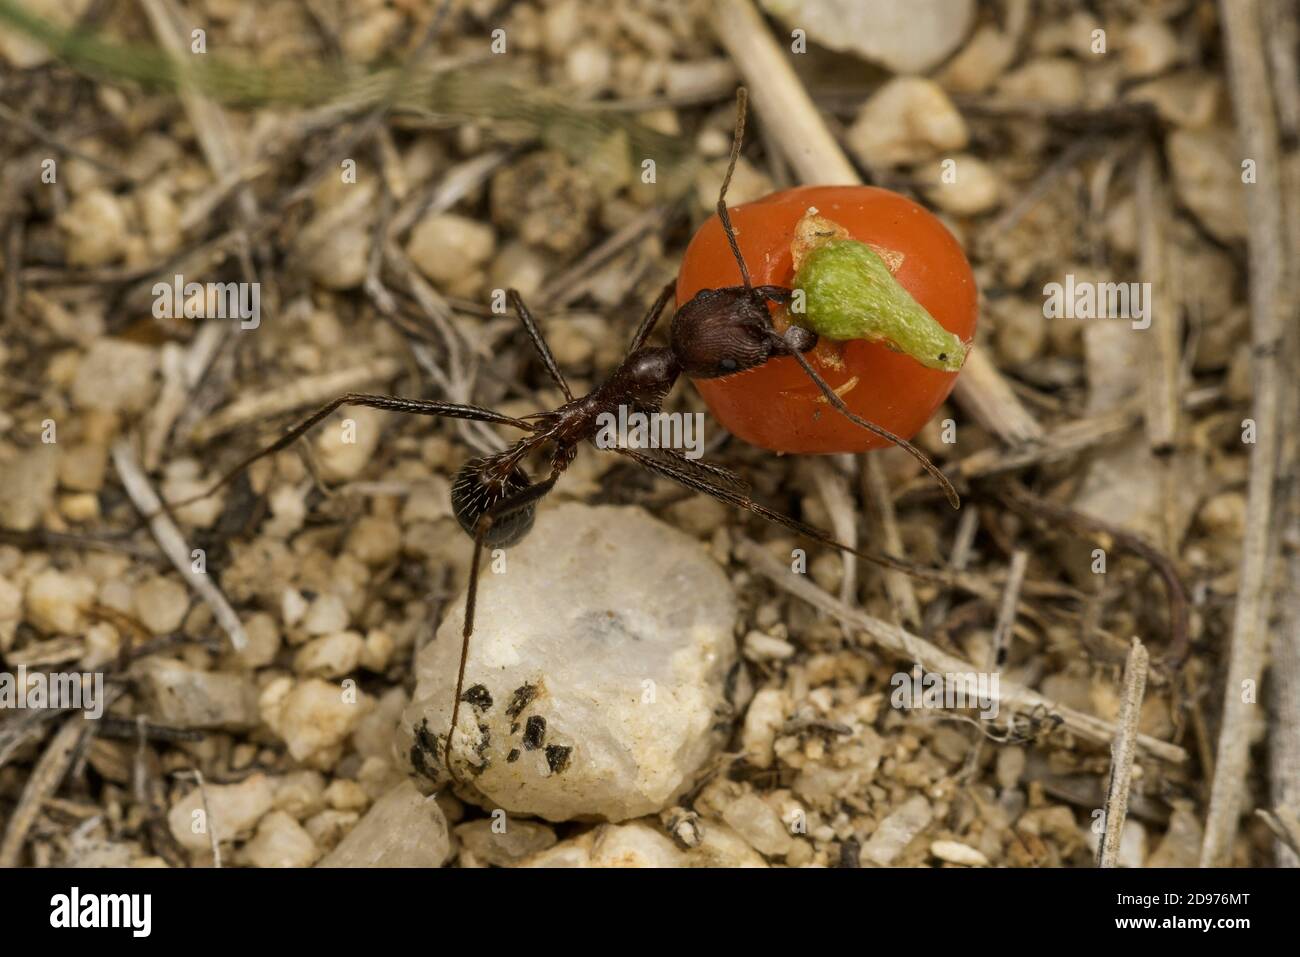 Novomesor albisetosus hormiga en la familia Myrmicinae, llevando berry a su nido, Desierto de Chihuahua, sureste de Arizona. Foto de stock